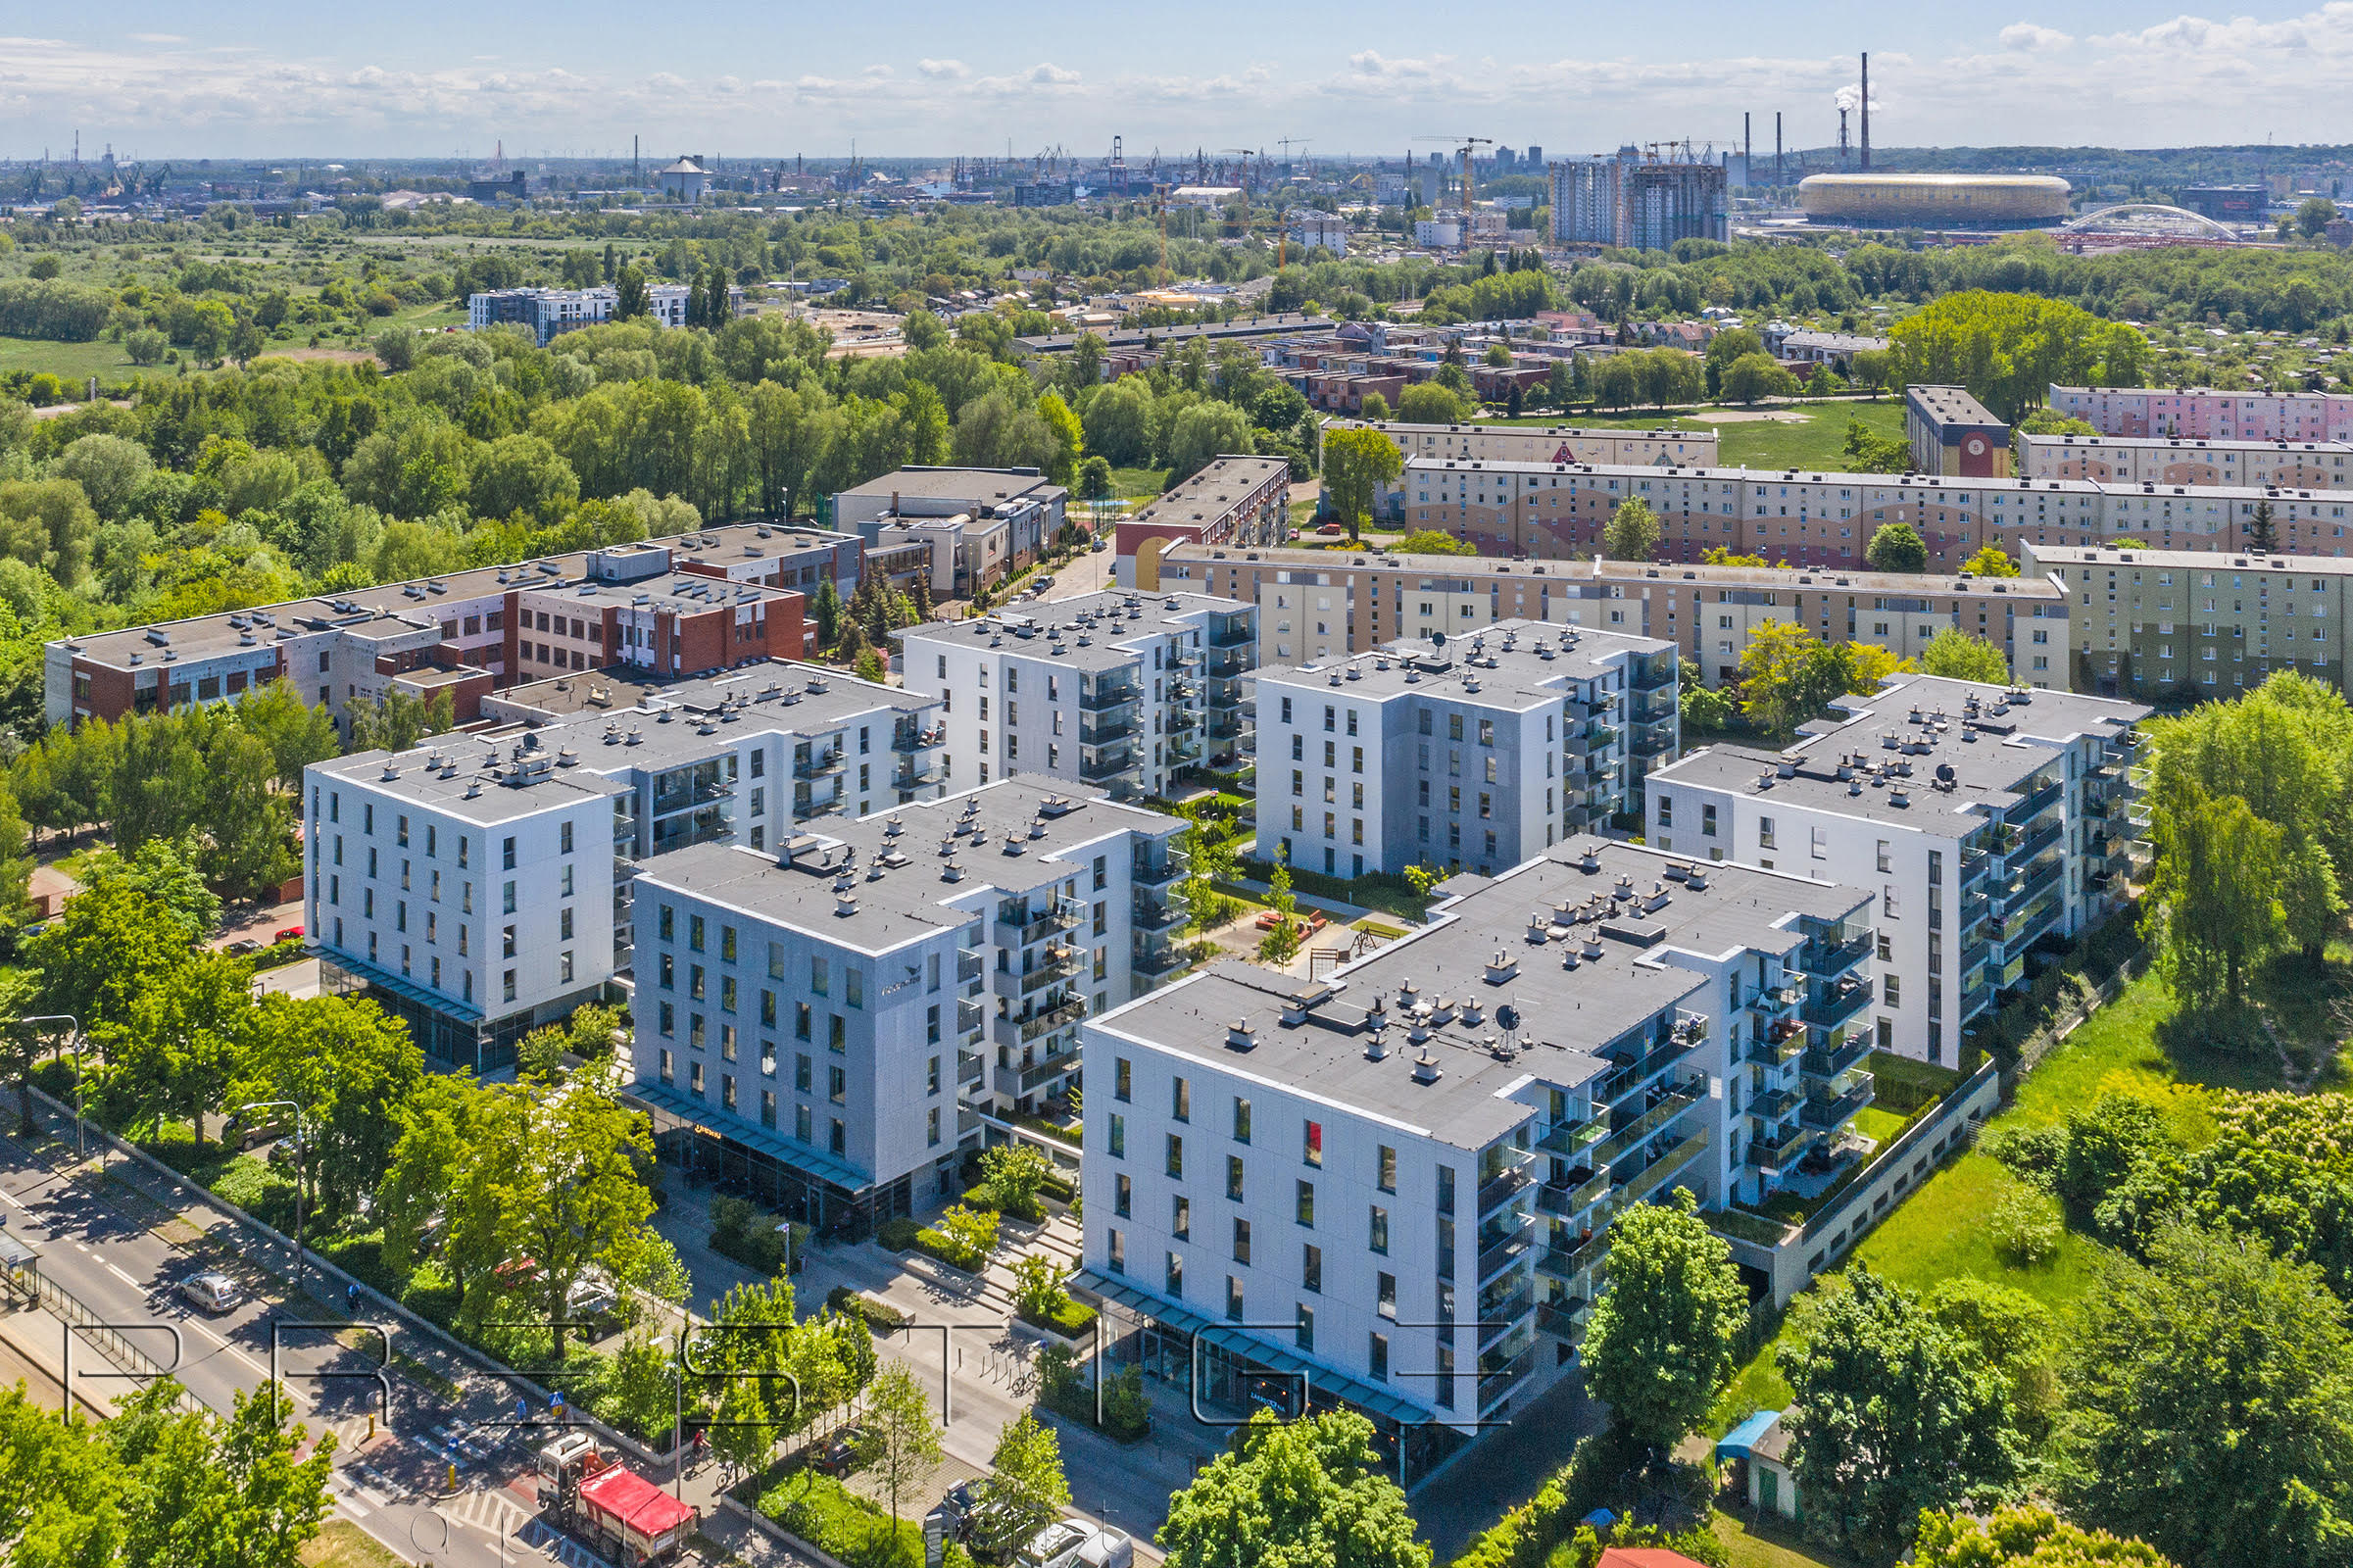 Wynajem apartamentów Gdańsk - PropertyStaging